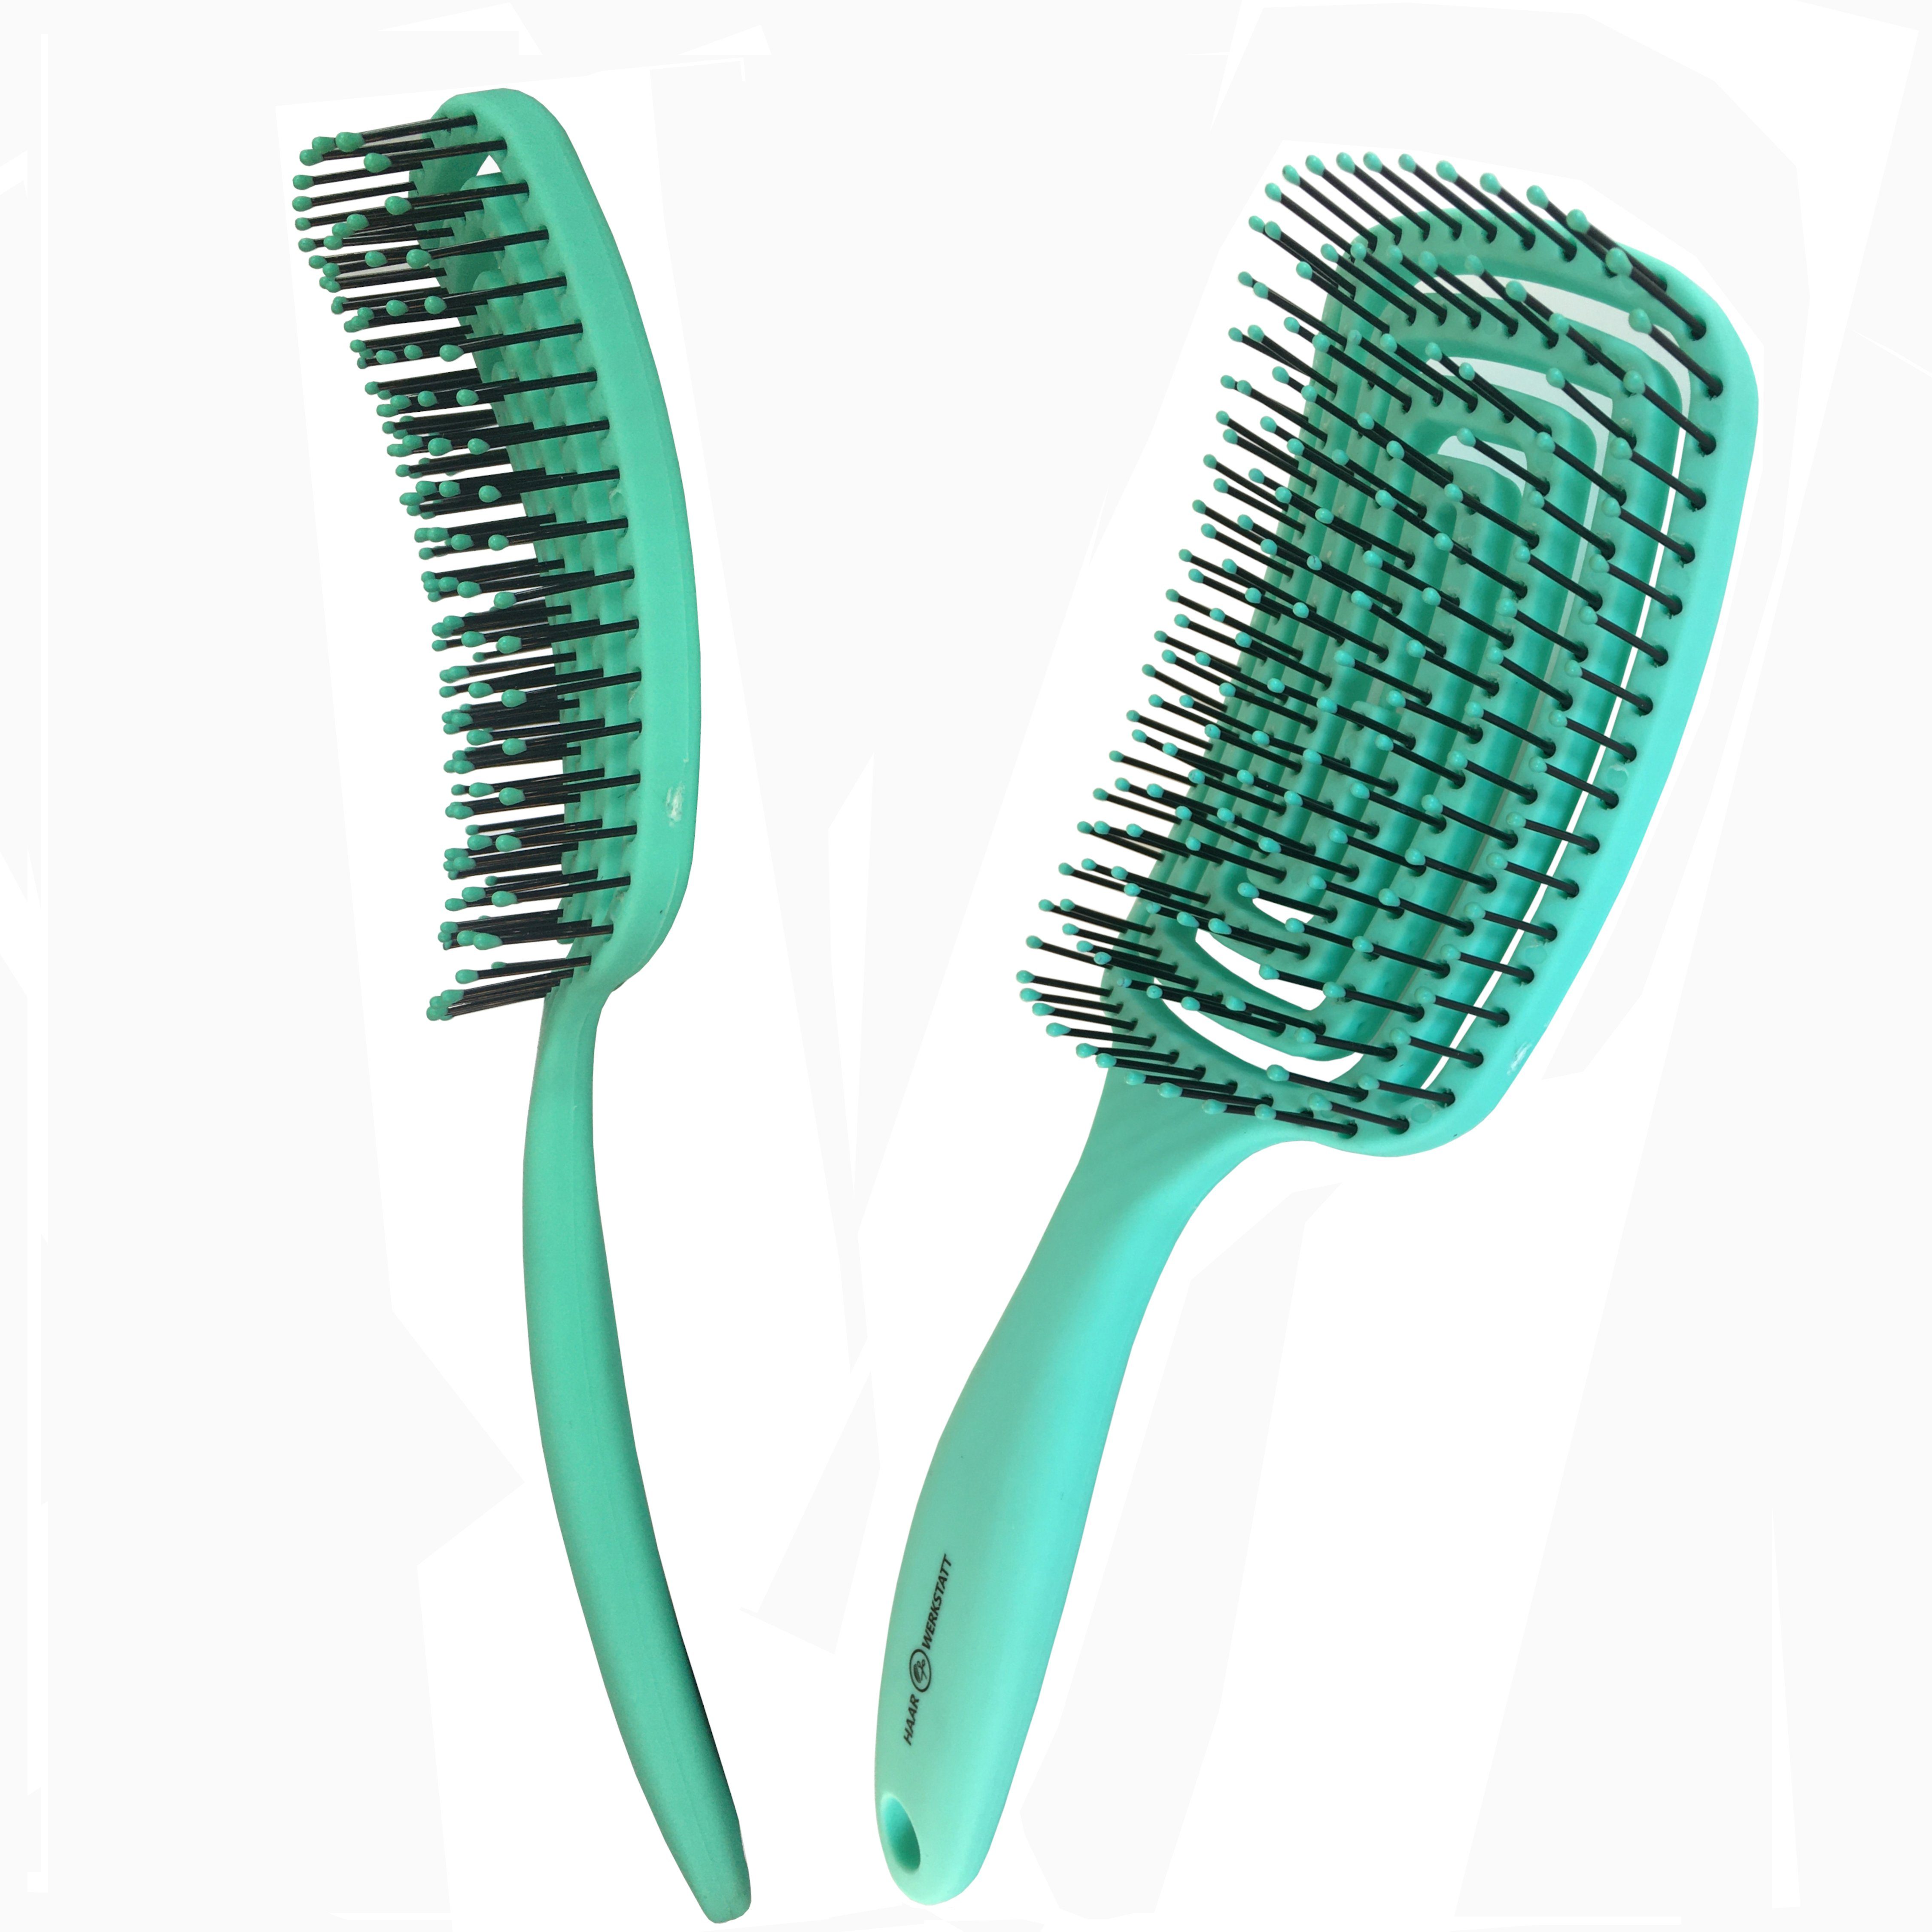 Haarwerkstatt Haarbürste Profi Haarbürste für Damen, Herren und Kinder - Die optimale Entwirrungsbürste für Ihr Haar, Gebogene Haarbürste mit weiche Borsten - curved brush Grün